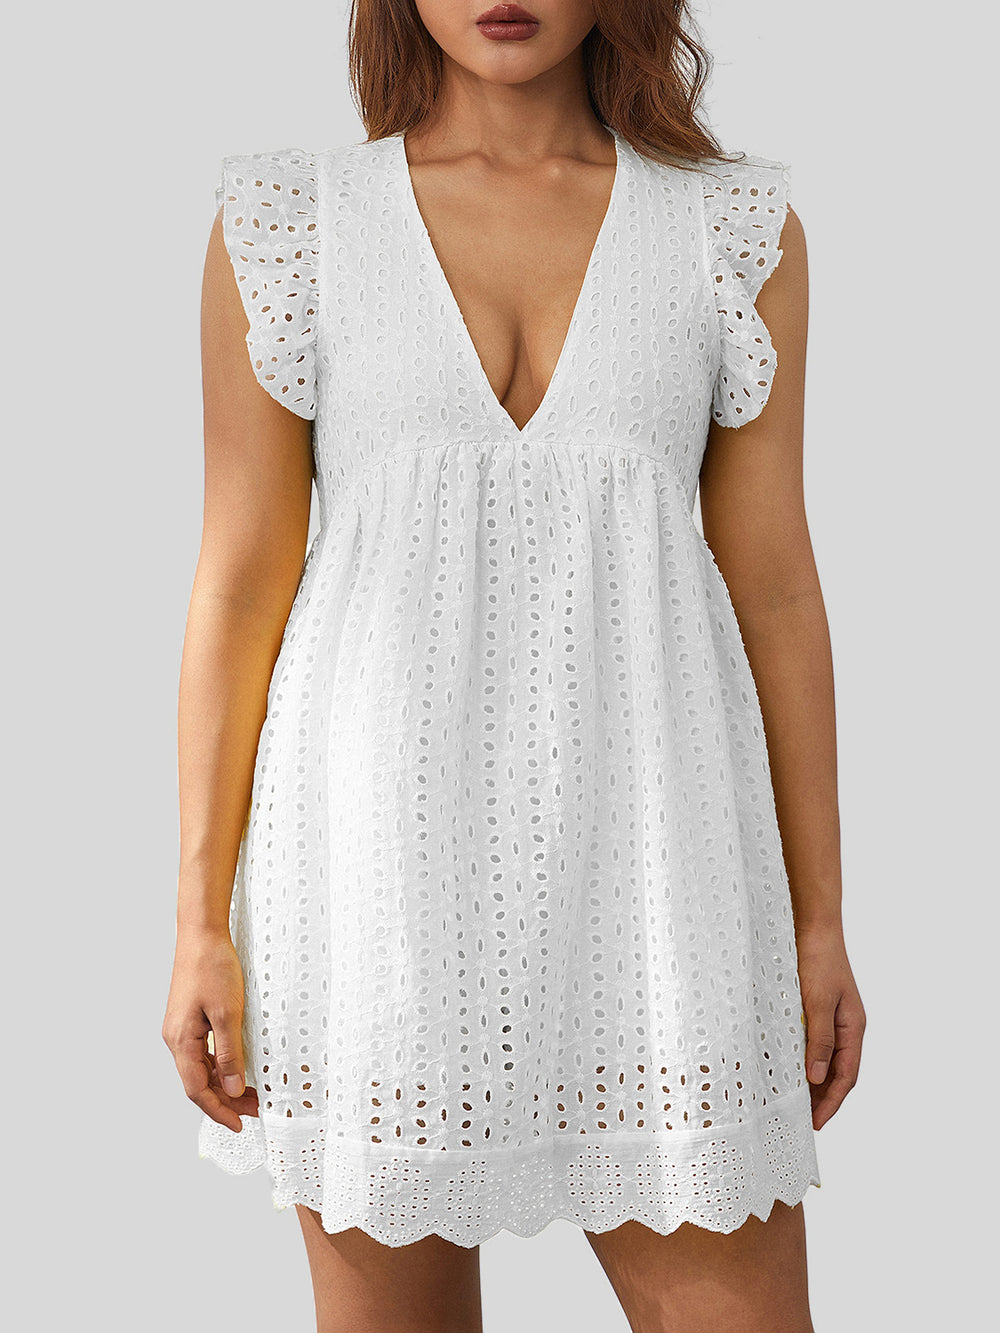 Ruffled Eyelet Cap Sleeve Mini Dress-Trendsi-[option4]-[option5]-[option6]-[option7]-[option8]-Shop-Boutique-Clothing-for-Women-Online